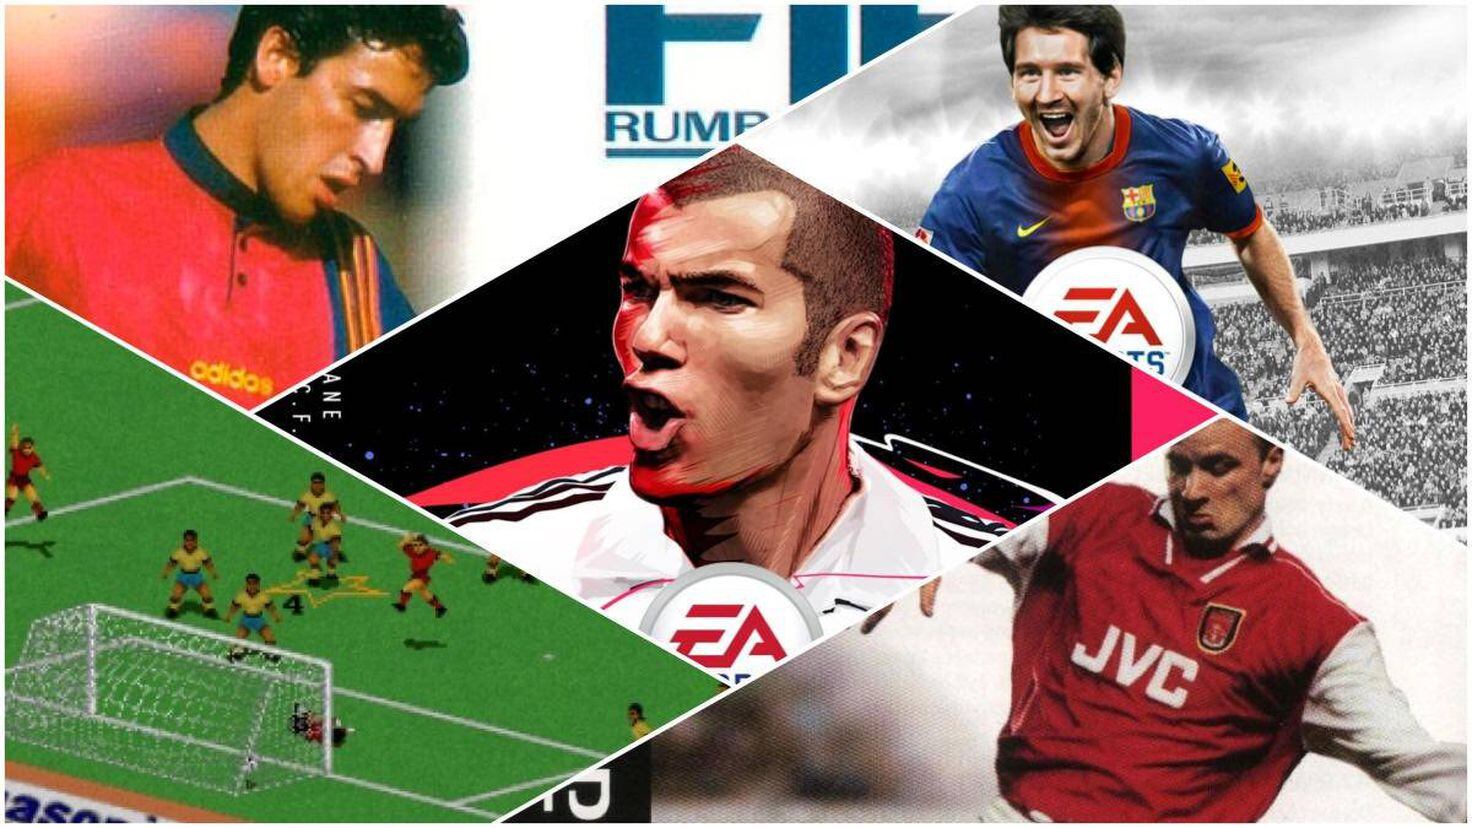 Los mejores videojuegos de fútbol: ¿Los recuerdas todos? - Meristation